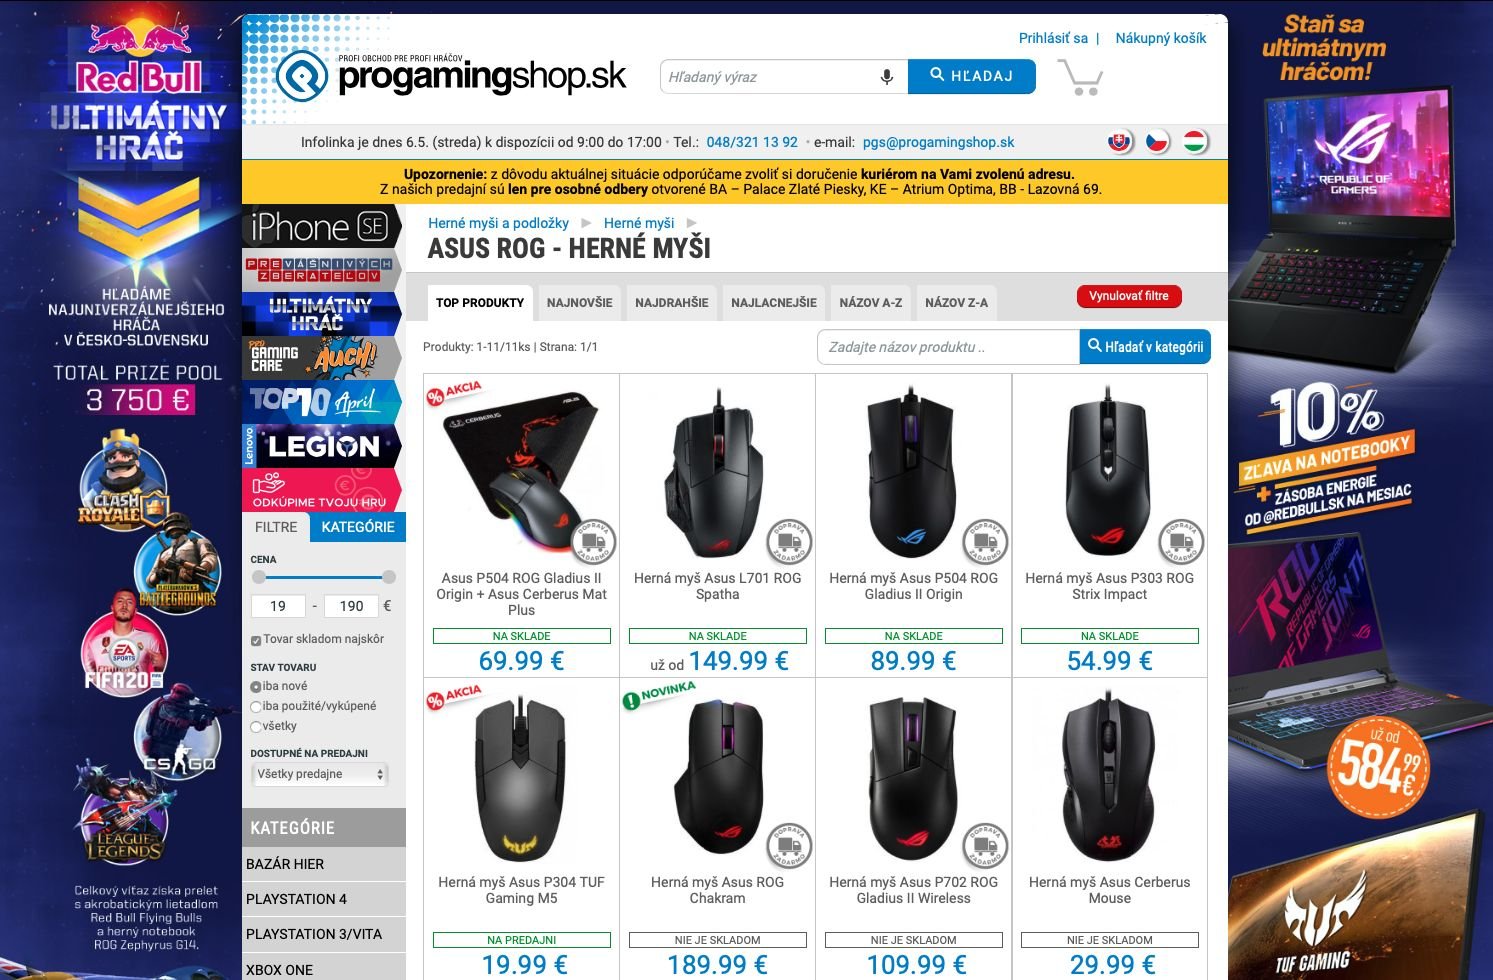 ProgamingShop.sk ti ponúkne herné notebooky, s ktorými môžeš zabojovať o ceny v hodnote 3 750 eur